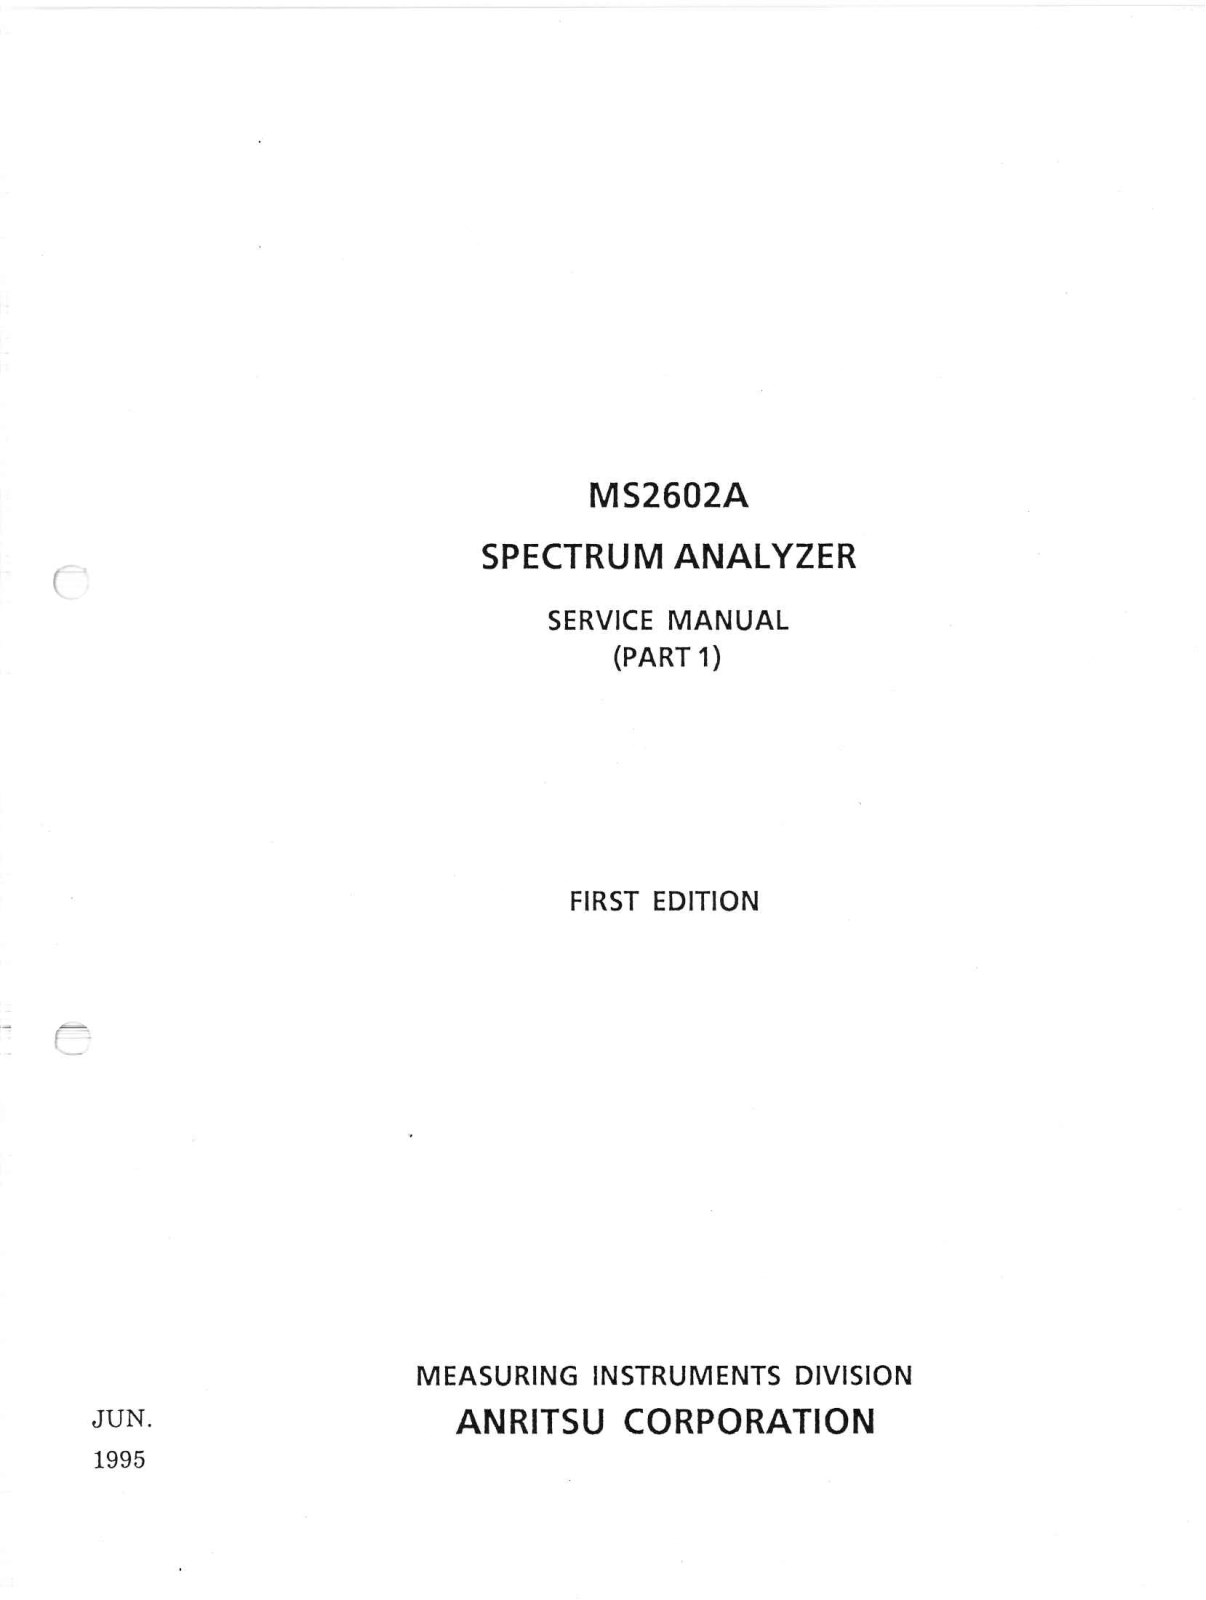 Anritsu MS2602A Service Manual